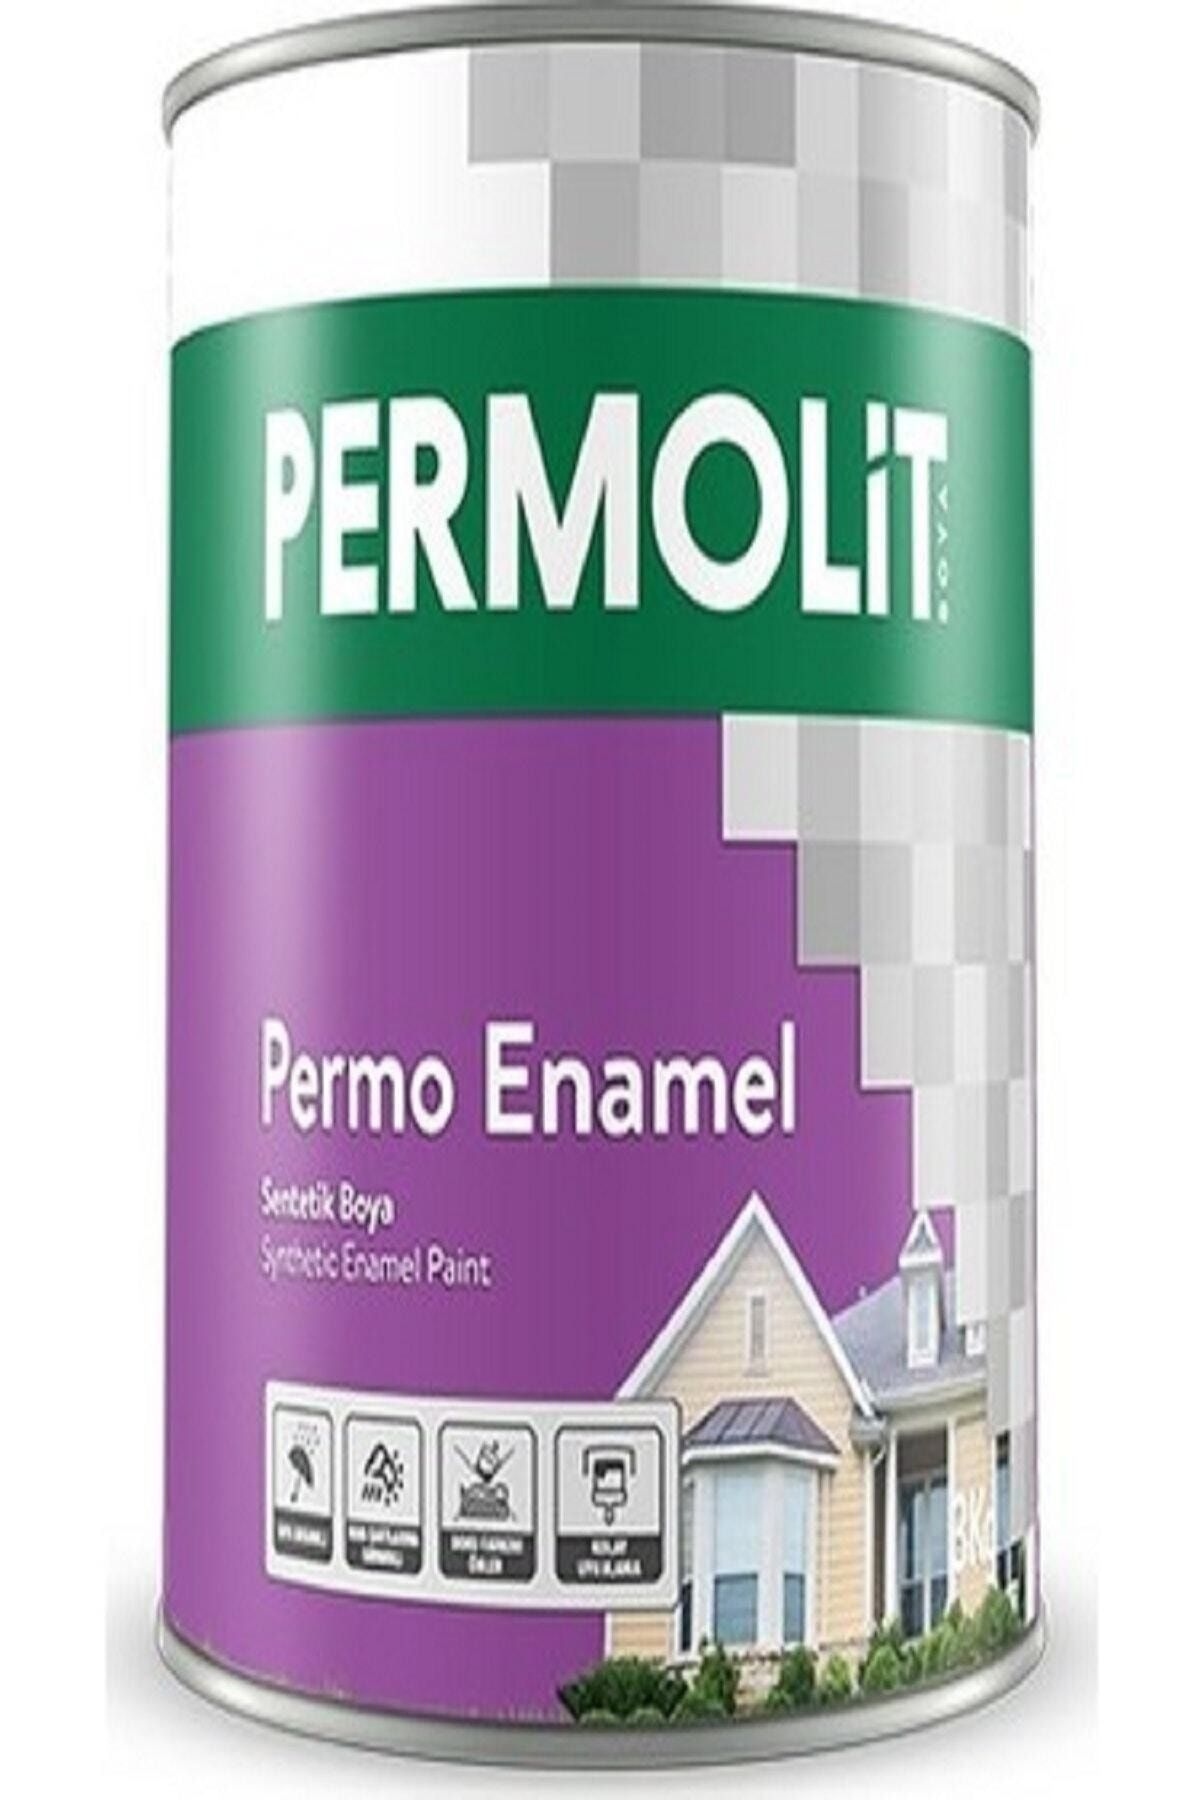 Permolit Permo Enamel Sentetik Yağlı Boya 2,5 Lt Beyaz